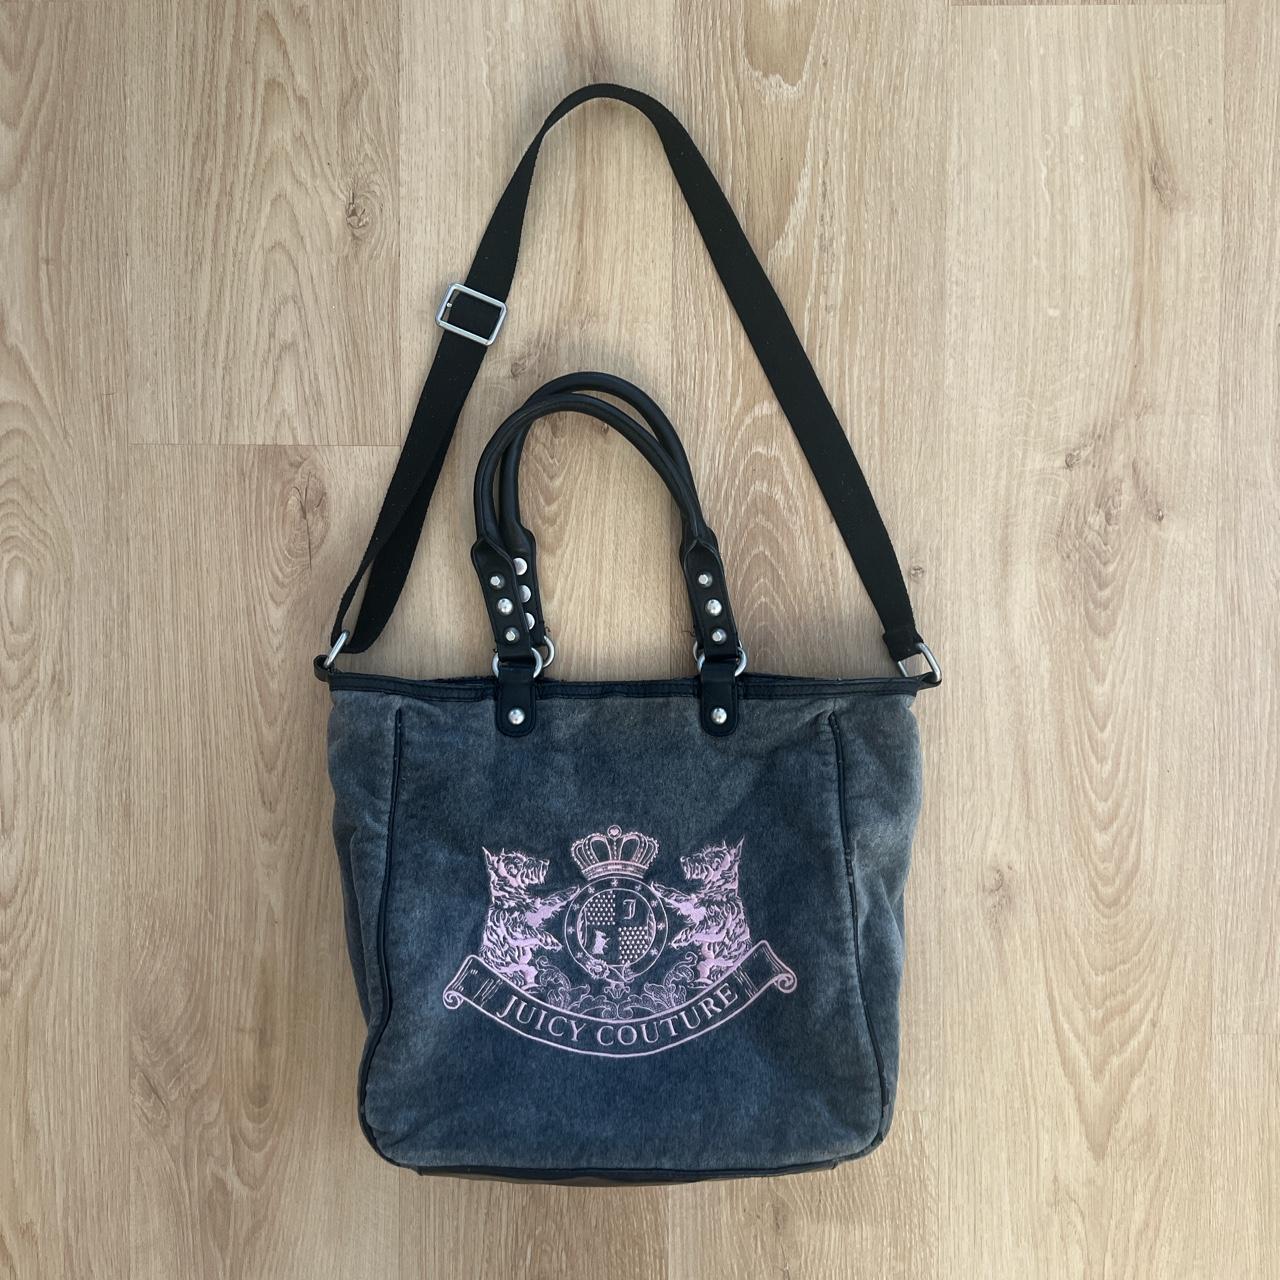 Vintage Y2K Juicy Couture handbag / purse The... - Depop